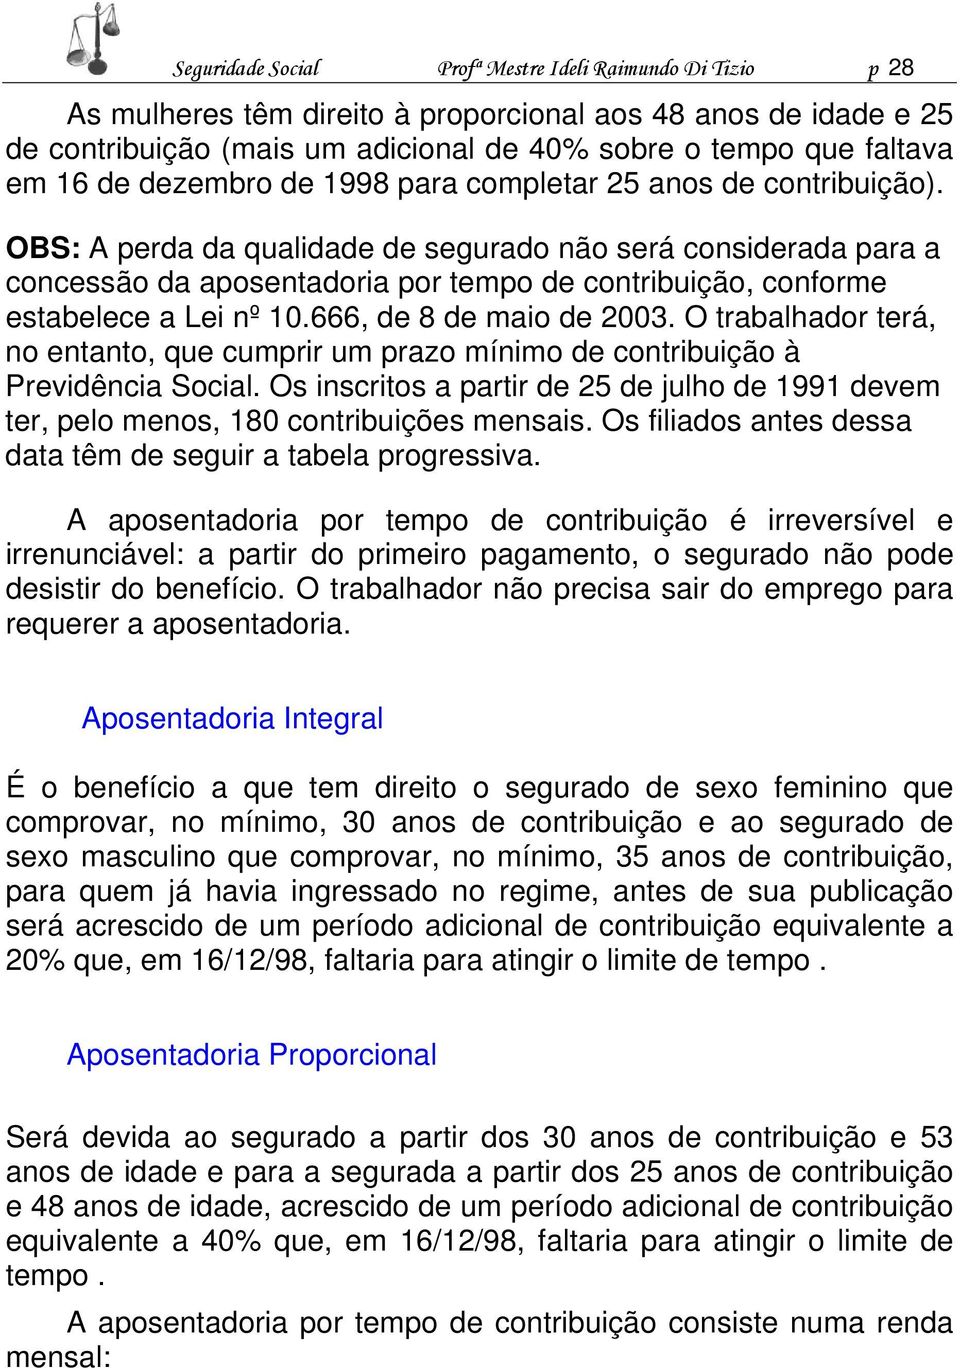 OBS: A perda da qualidade de segurado não será considerada para a concessão da aposentadoria por tempo de contribuição, conforme estabelece a Lei nº 10.666, de 8 de maio de 2003.